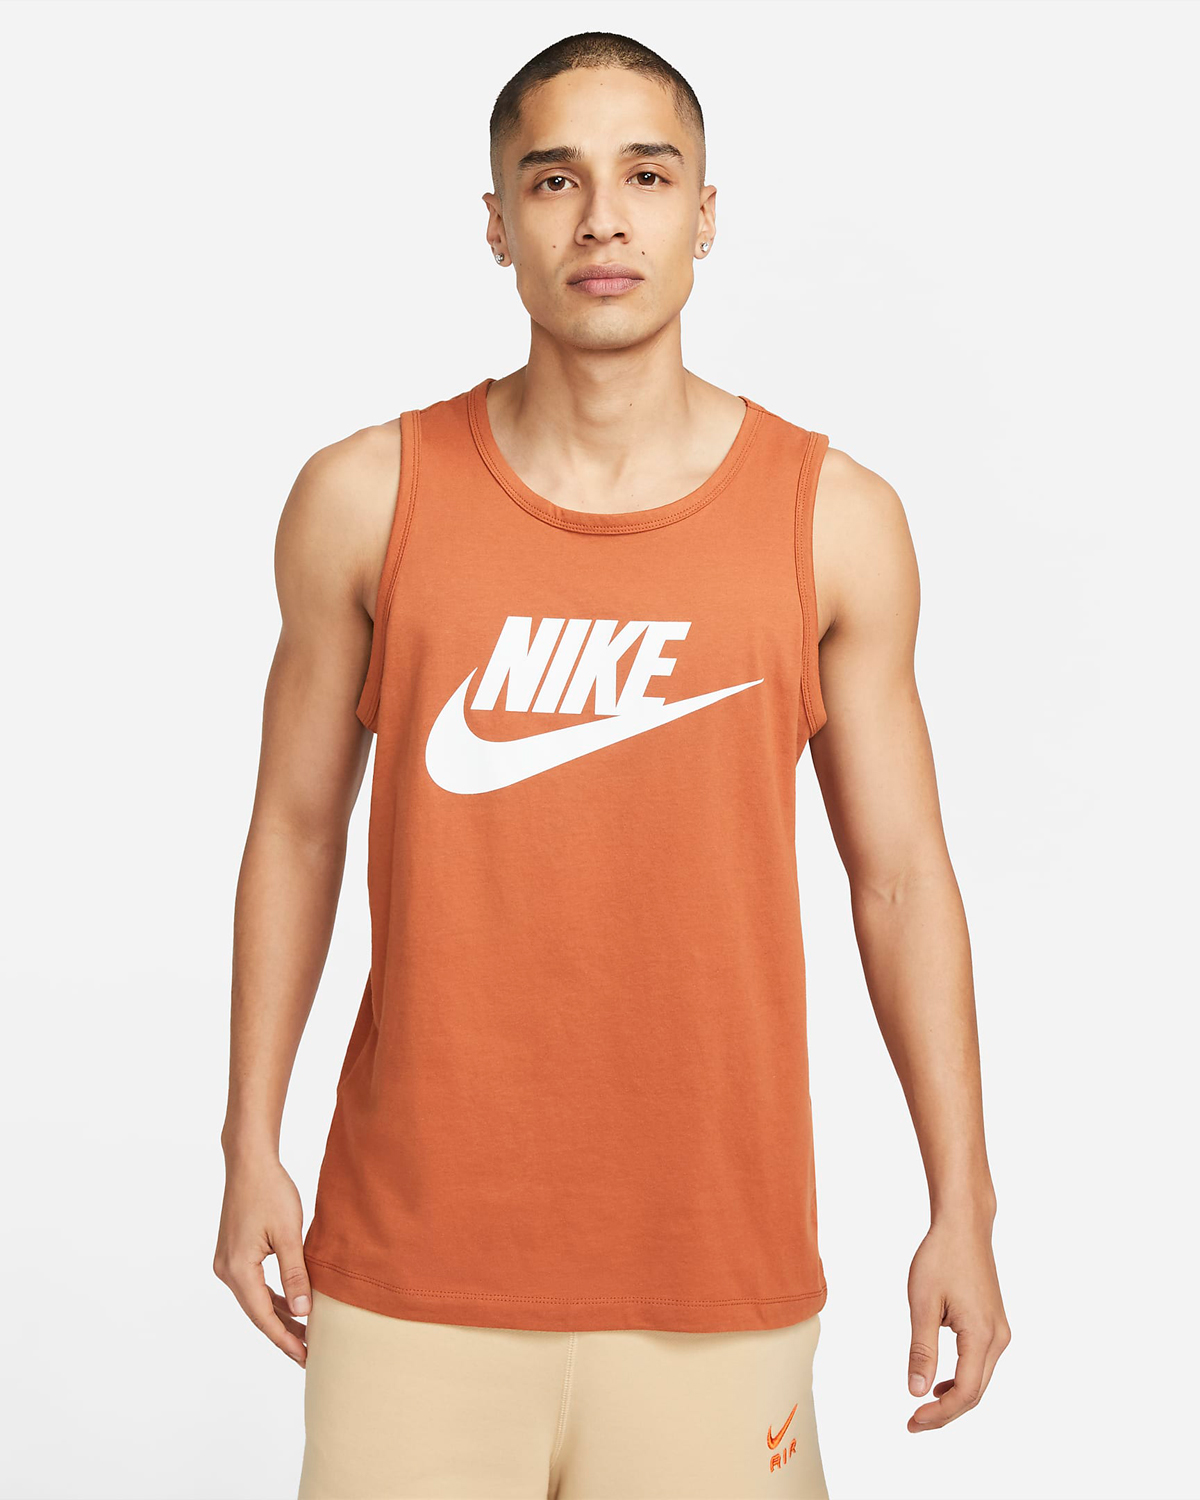 Nike-Sportswear-Tank-Top-Dark-Russet